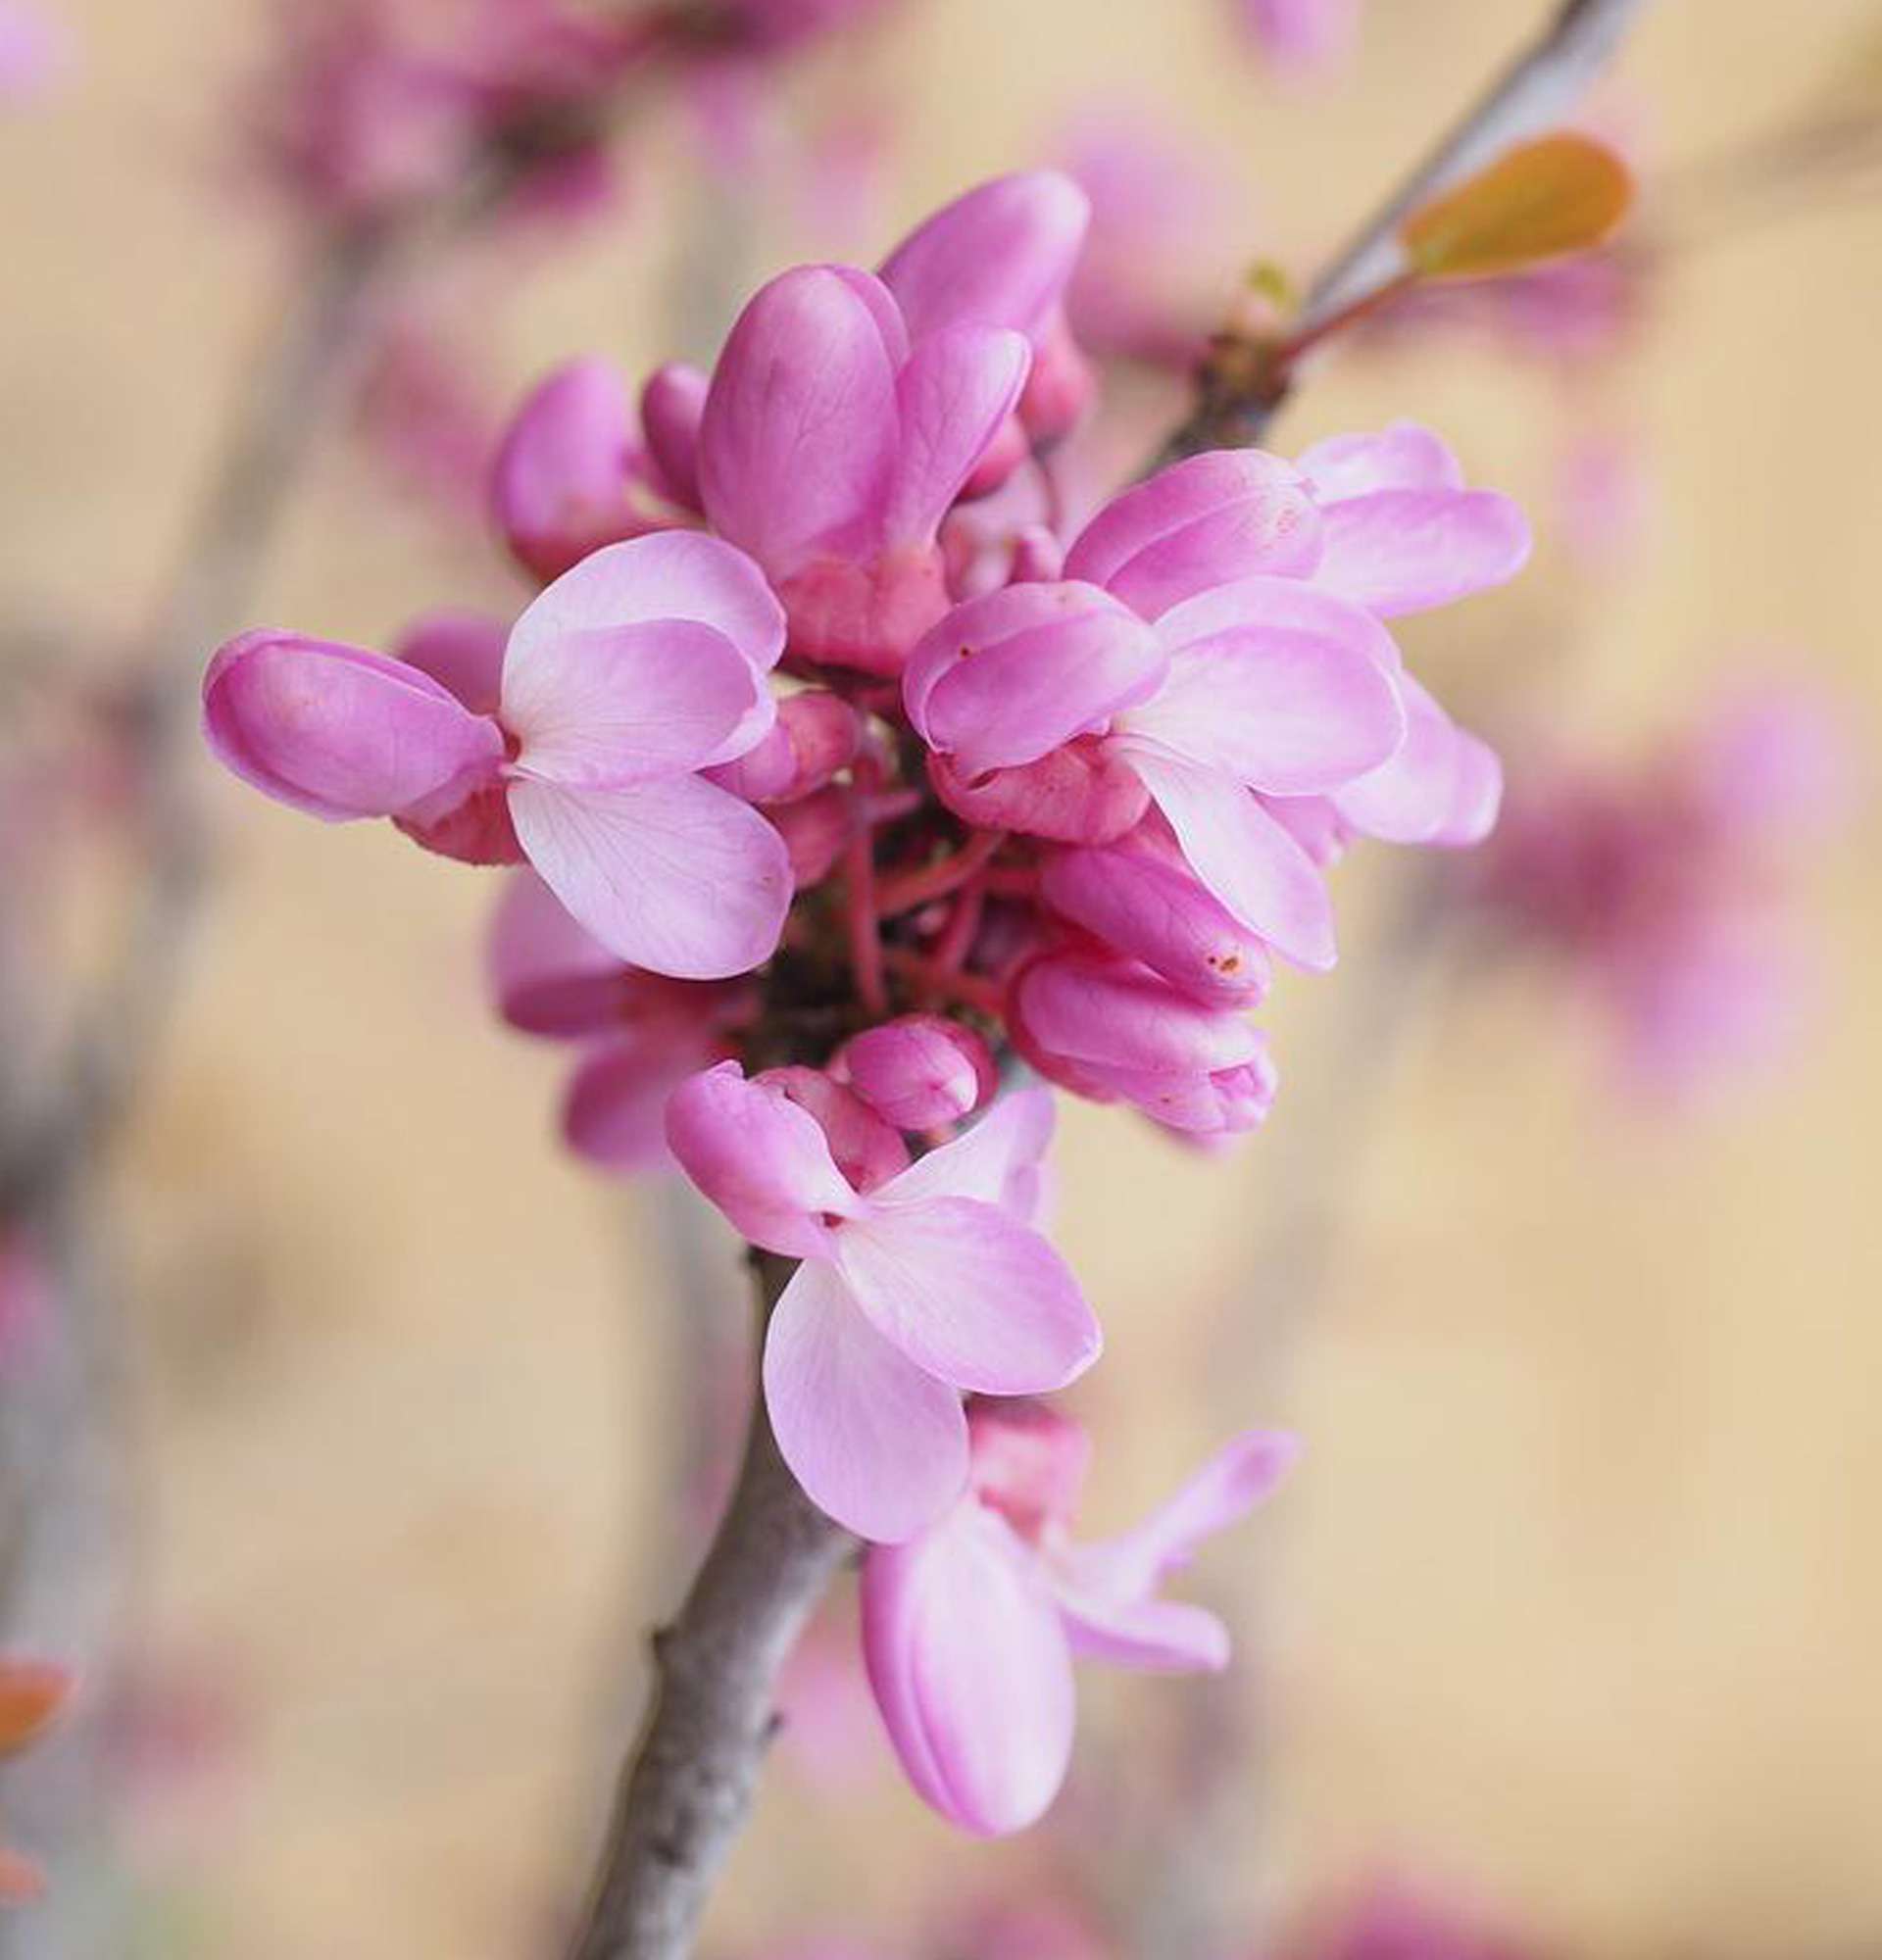  багрянник фото - цветущие розовым деревья